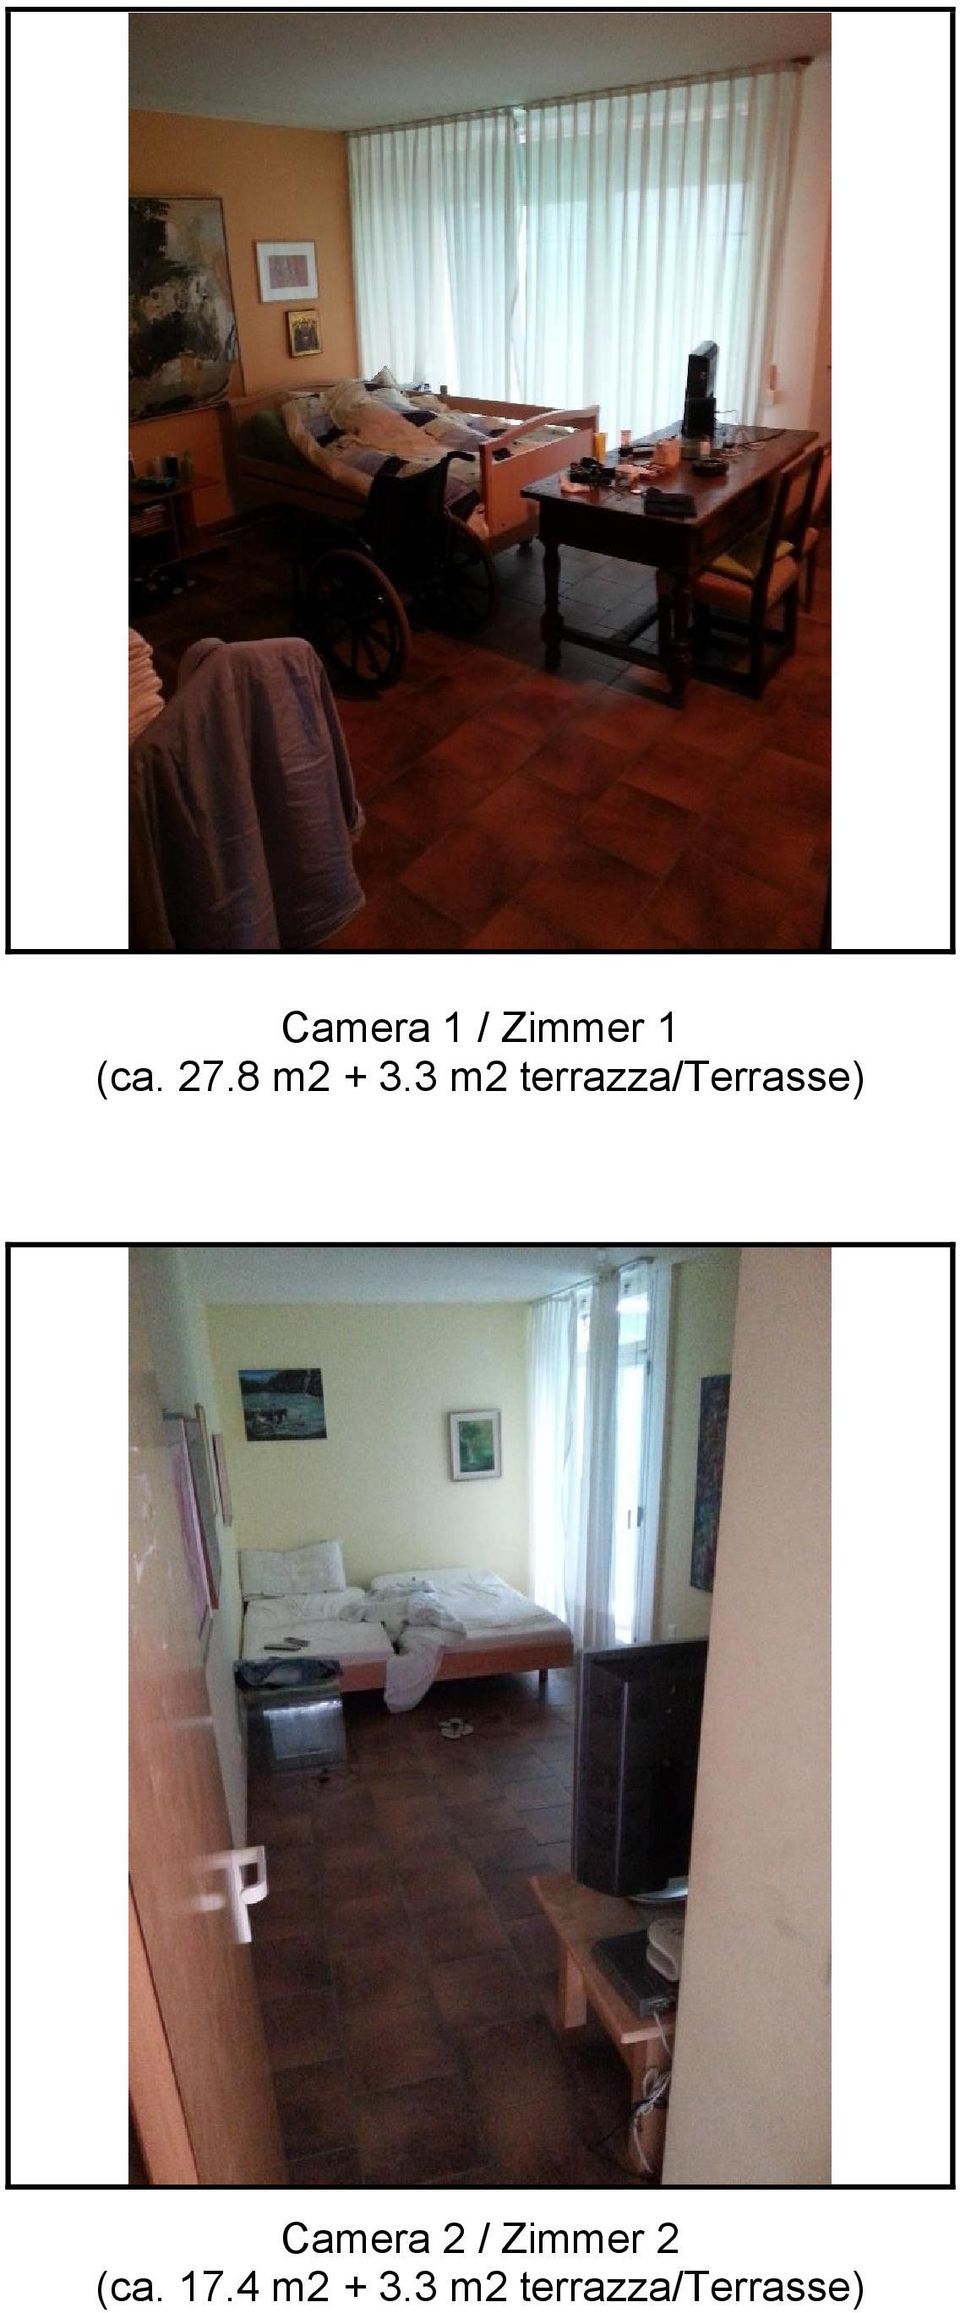 3 m2 terrazza/terrasse) Camera